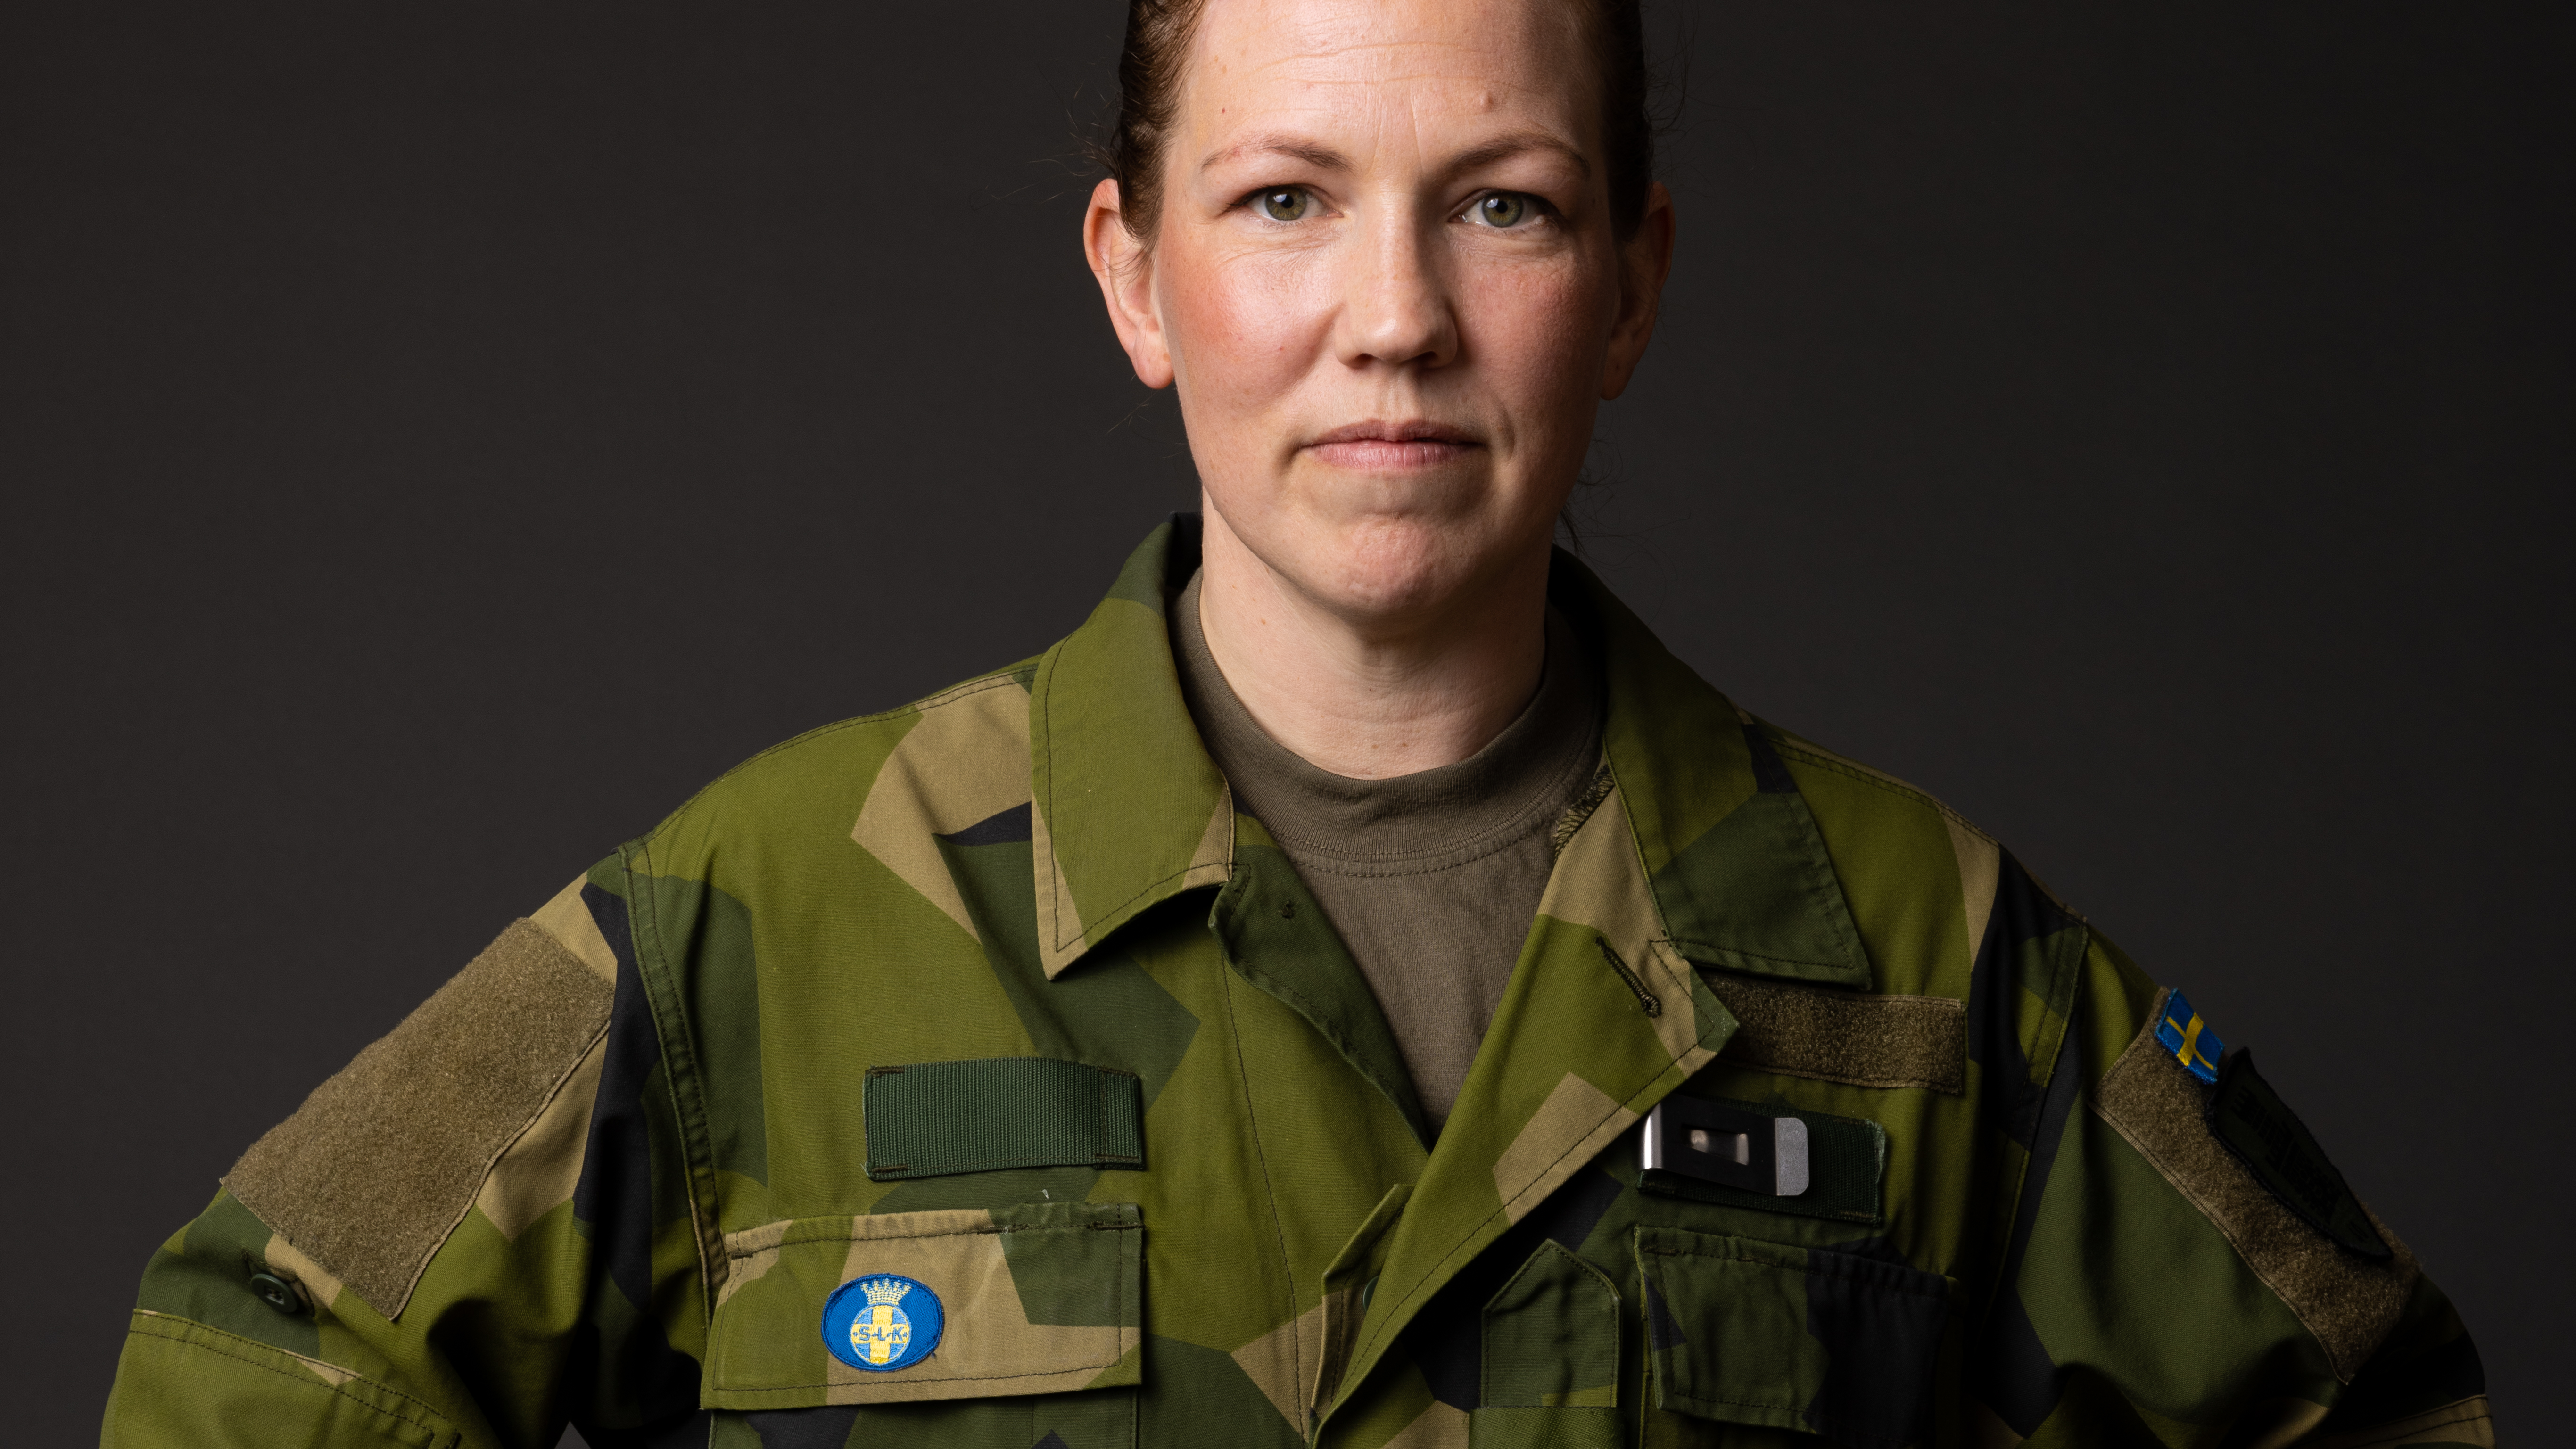 Kvinna i försvarsmaktens uniform med Svenska Lottakåren märke